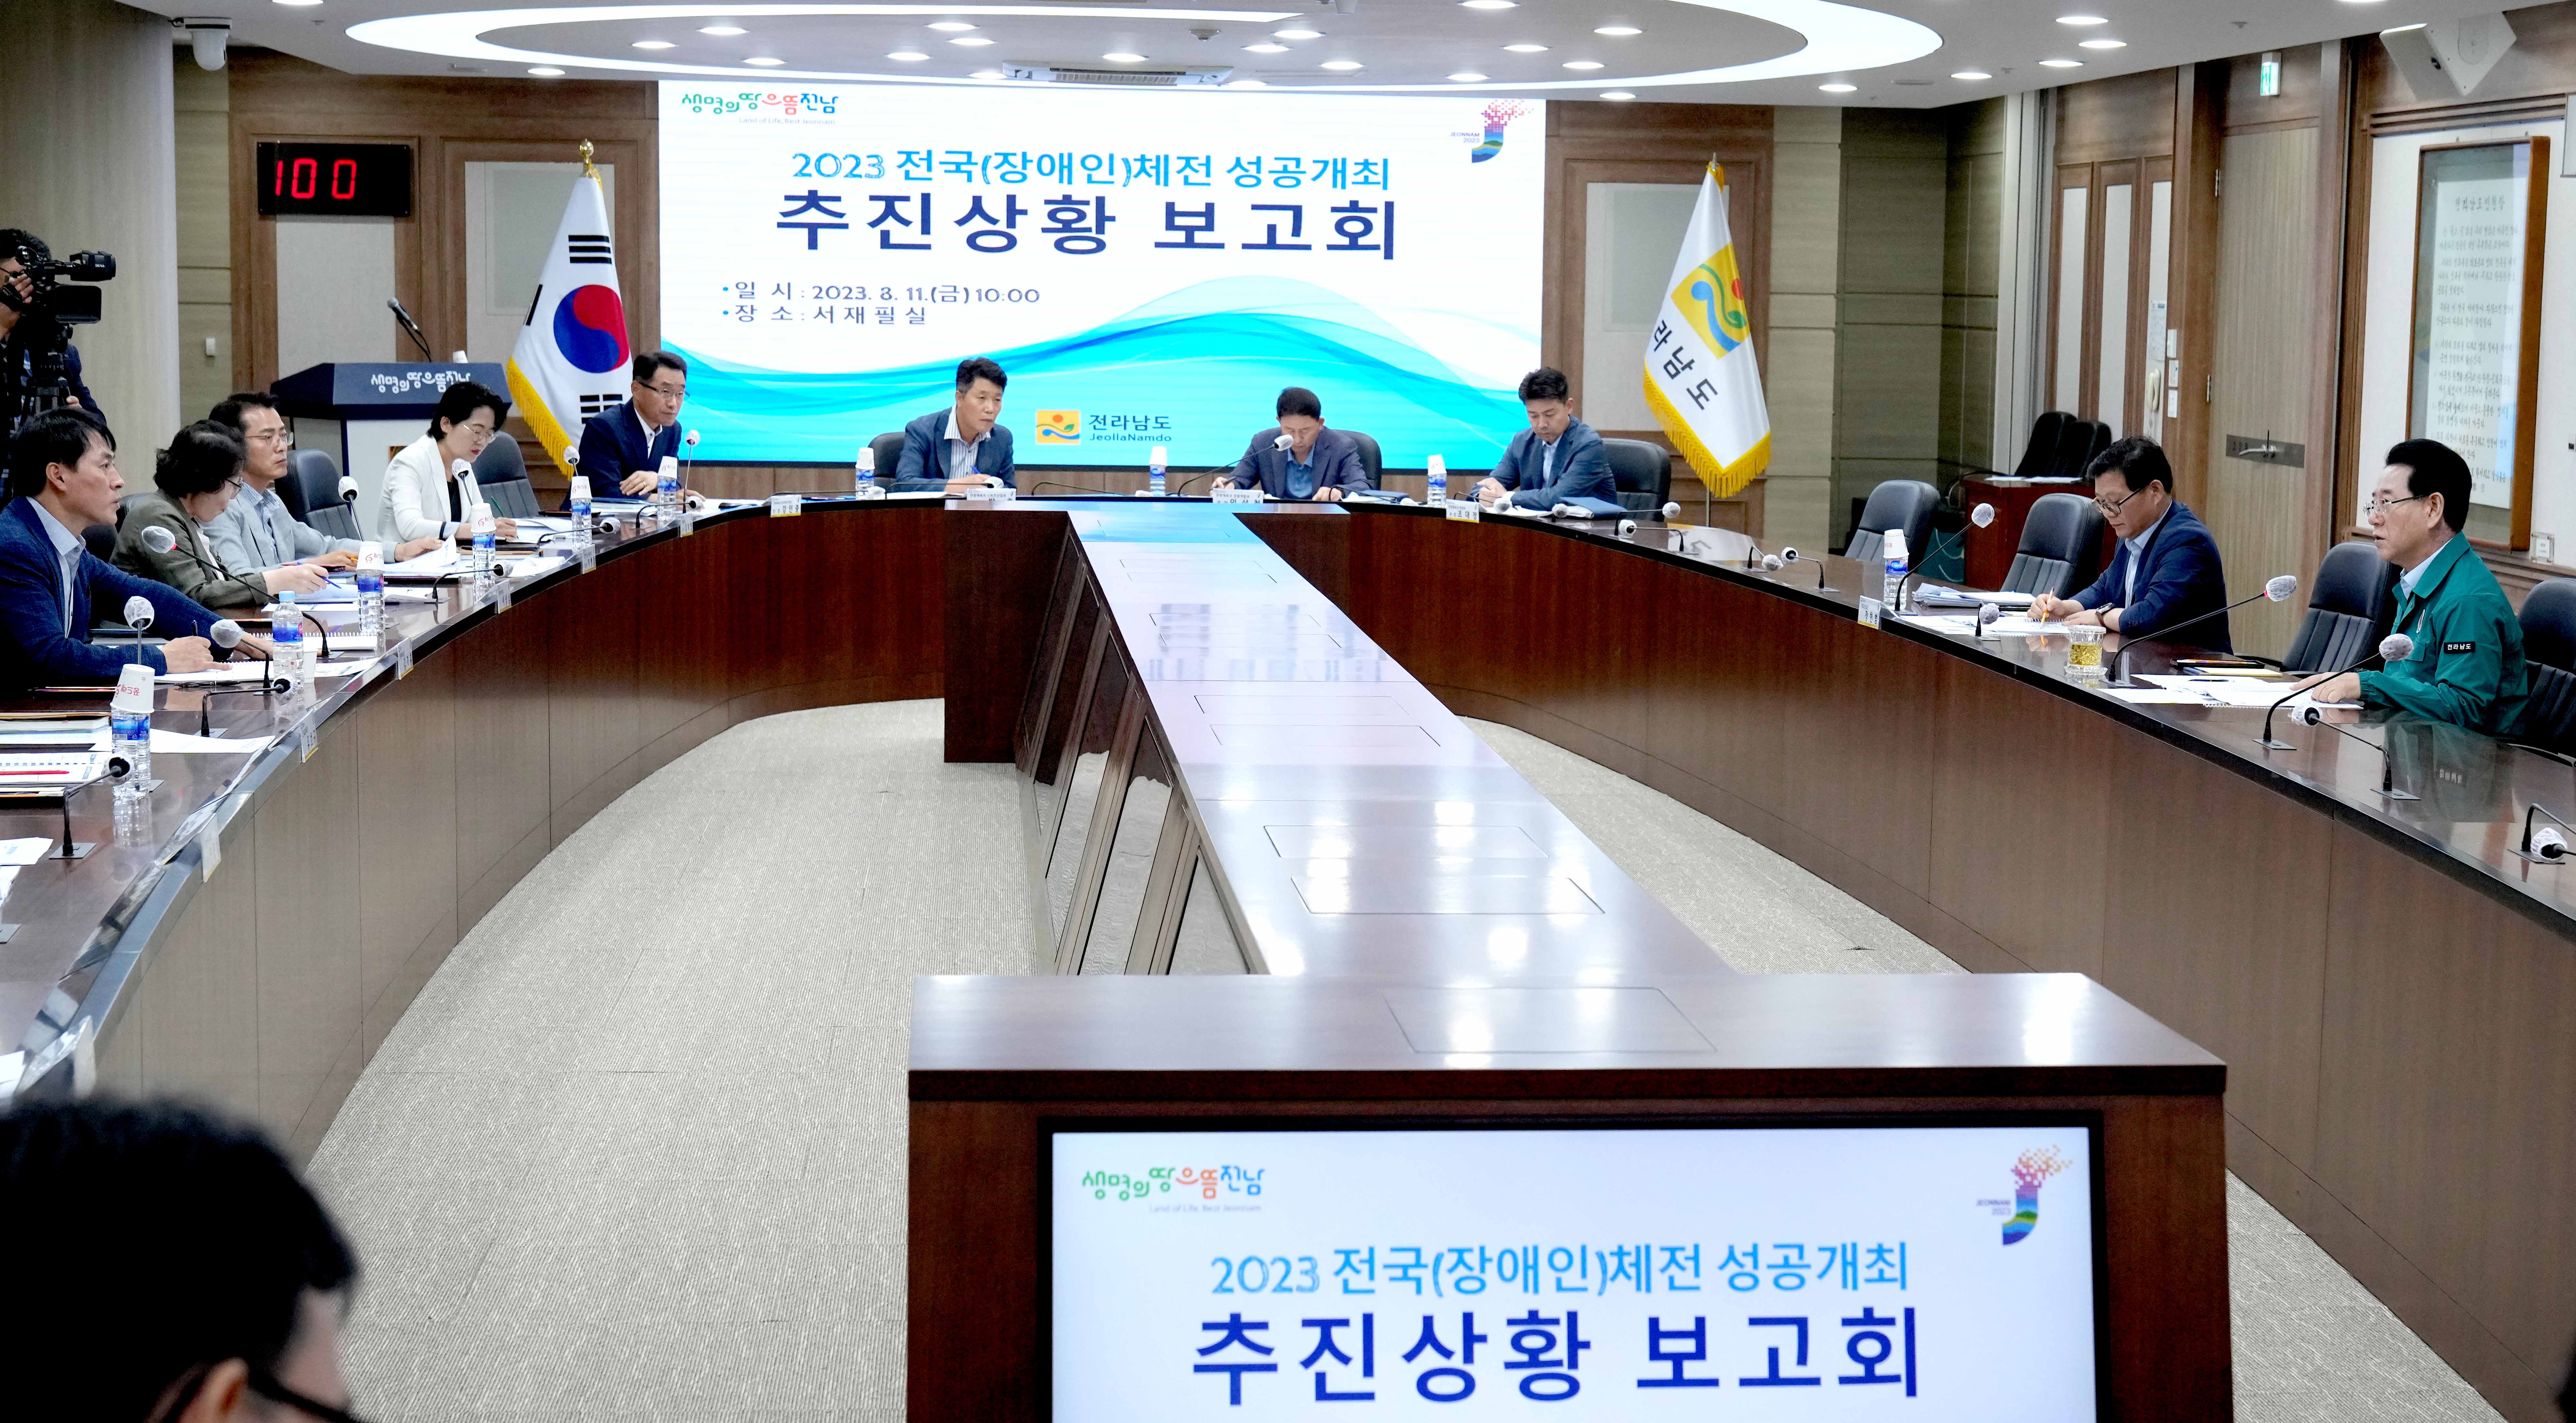 2023 전국(장애인)체전 대책 회의 개최3